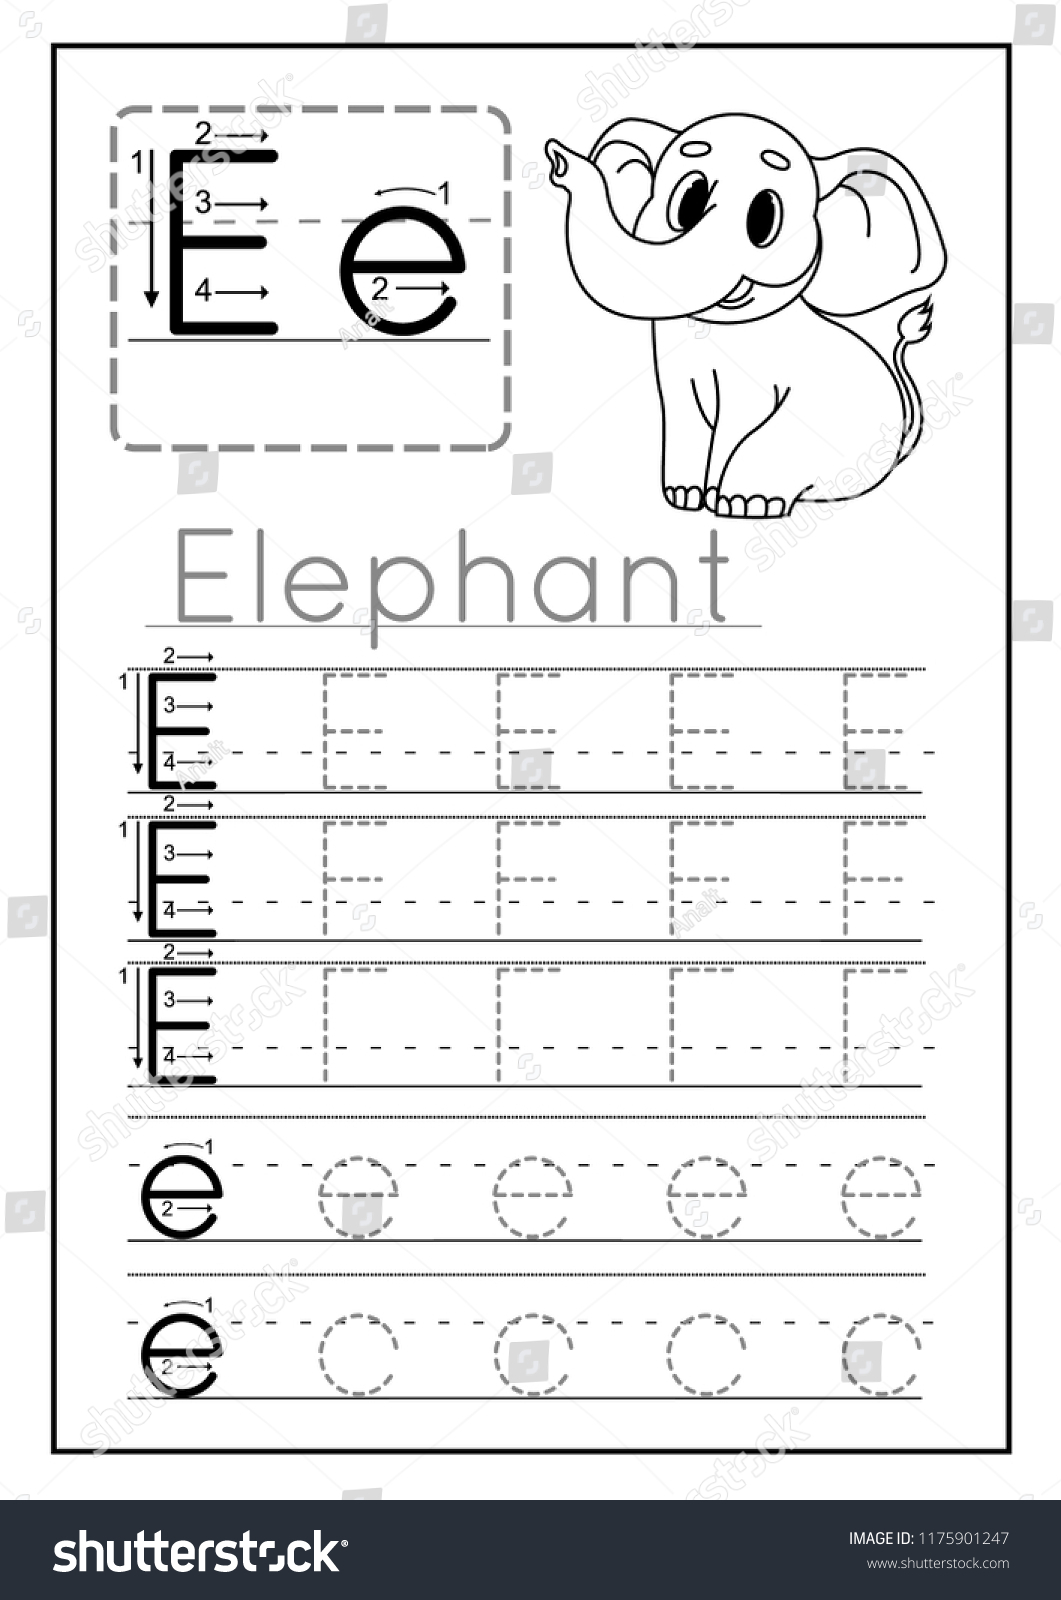 Writing Practice Letter E Printable Worksheet Stock Vector inside Letter E Worksheets For Preschool